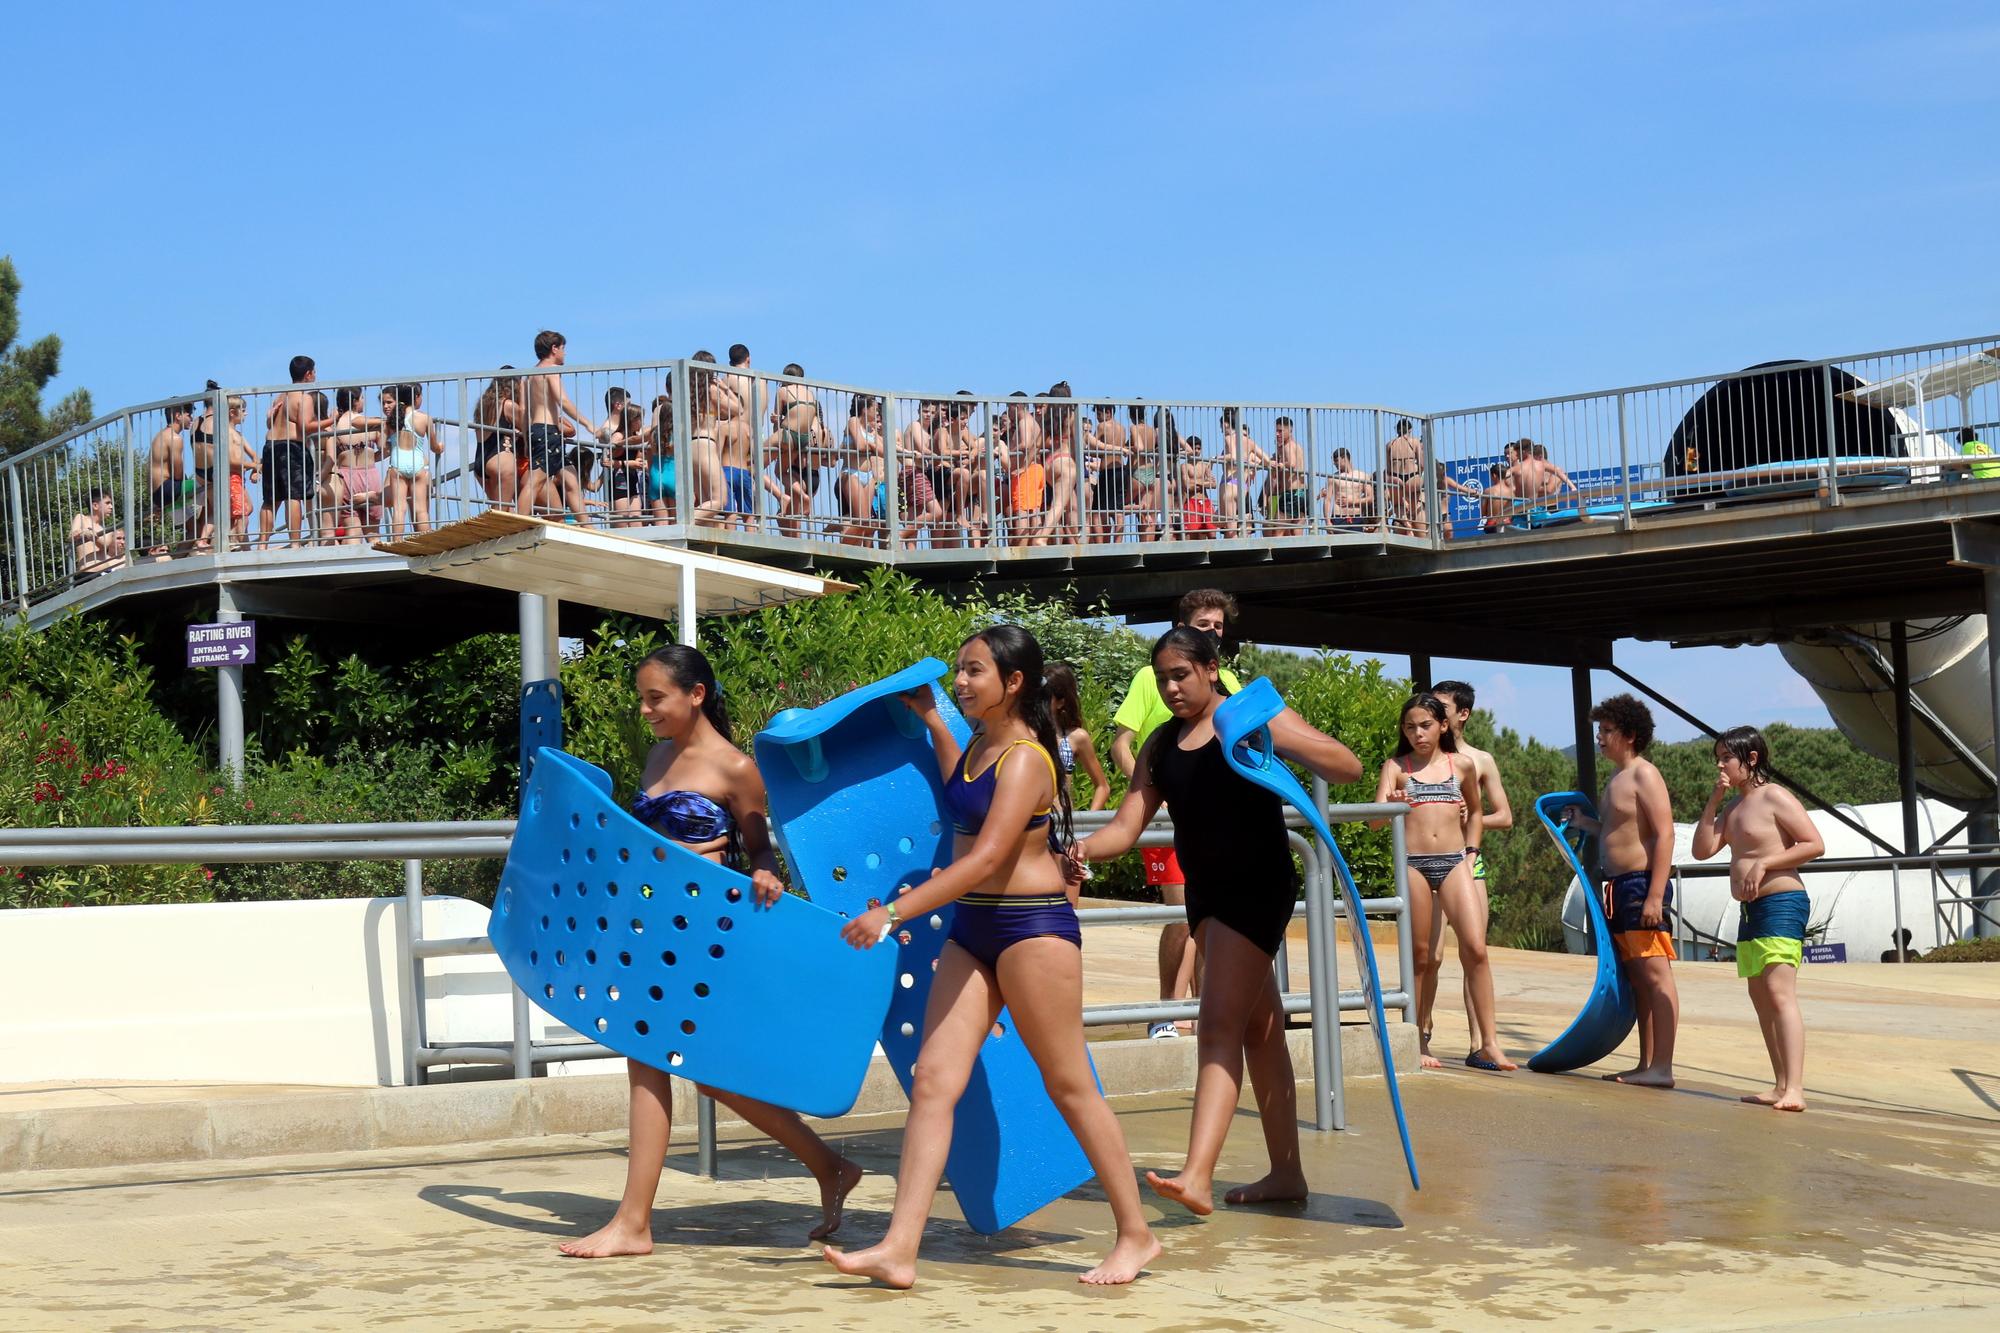 Arrenca la temporada als parcs aquàtics de la Costa Brava